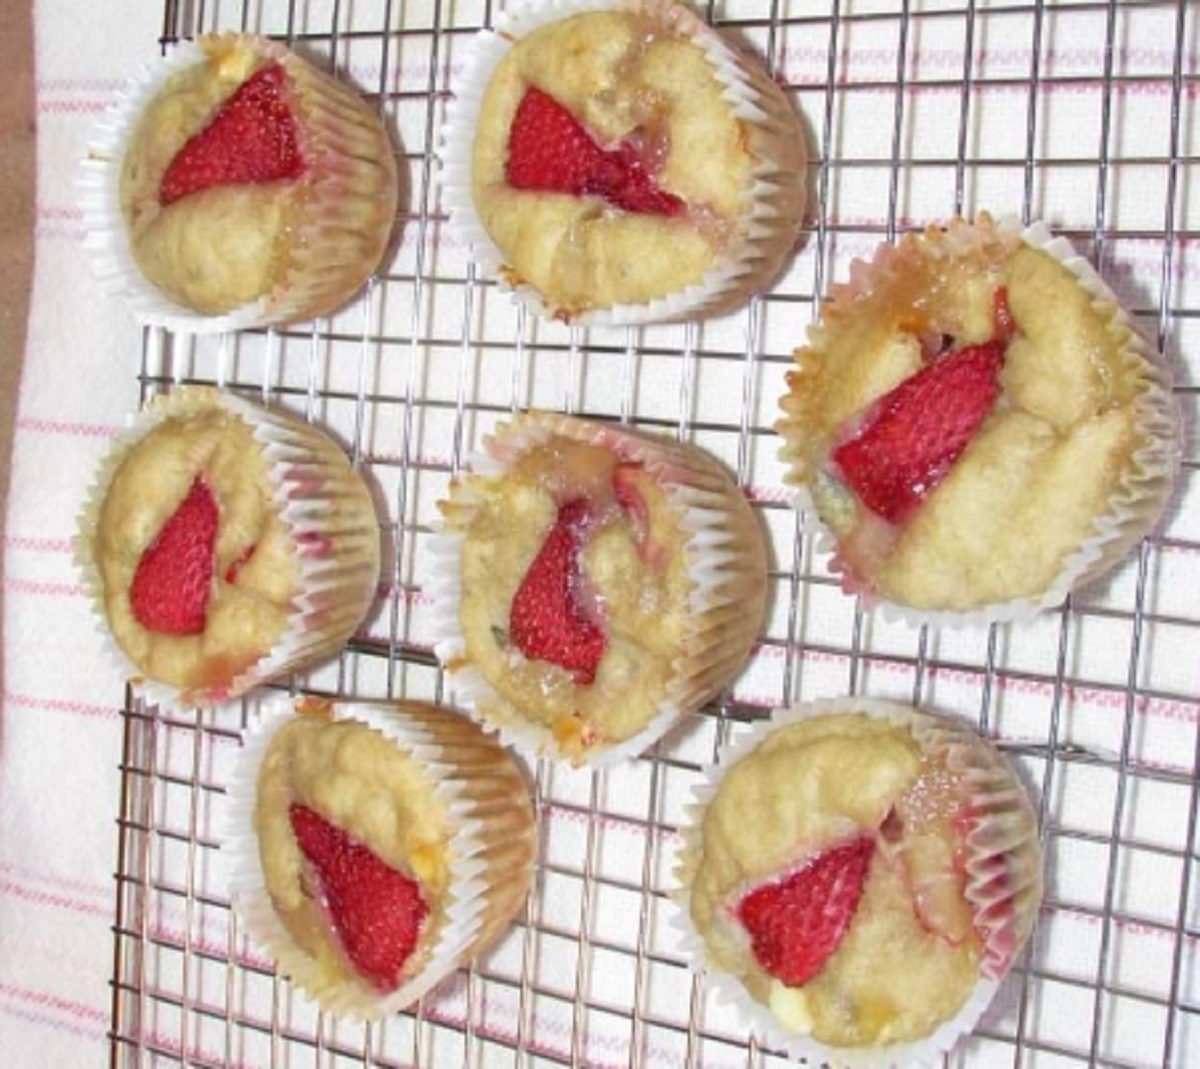 Recette: Muffins aux fraises, bananes et chocolat blanc.